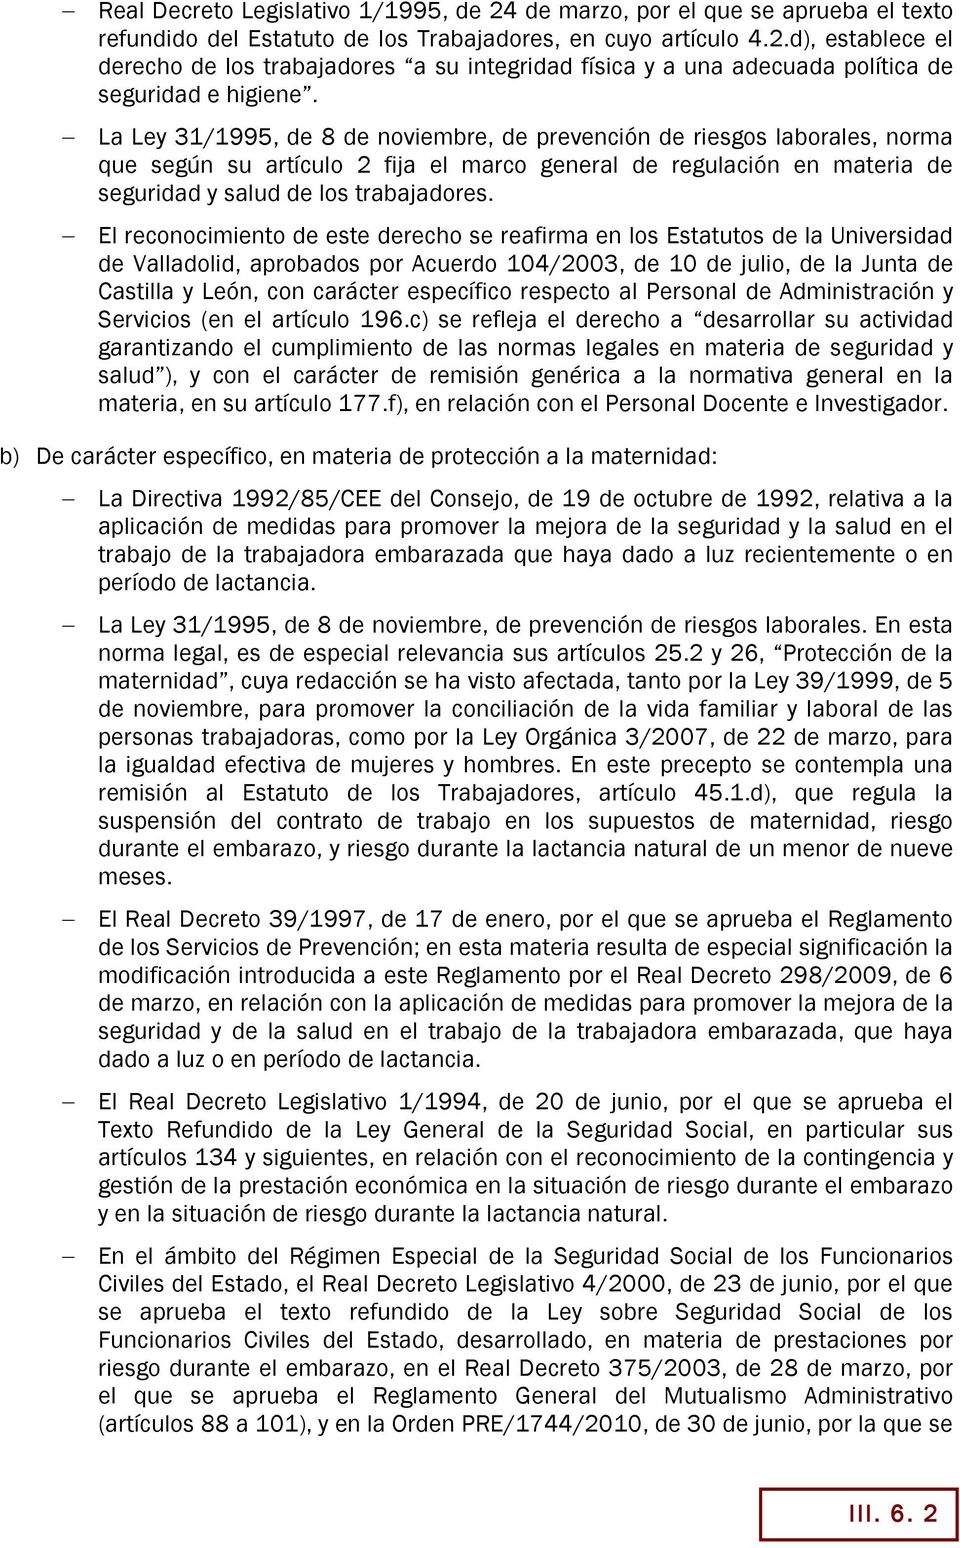 El reconocimiento de este derecho se reafirma en los Estatutos de la Universidad de Valladolid, aprobados por Acuerdo 104/2003, de 10 de julio, de la Junta de Castilla y León, con carácter específico